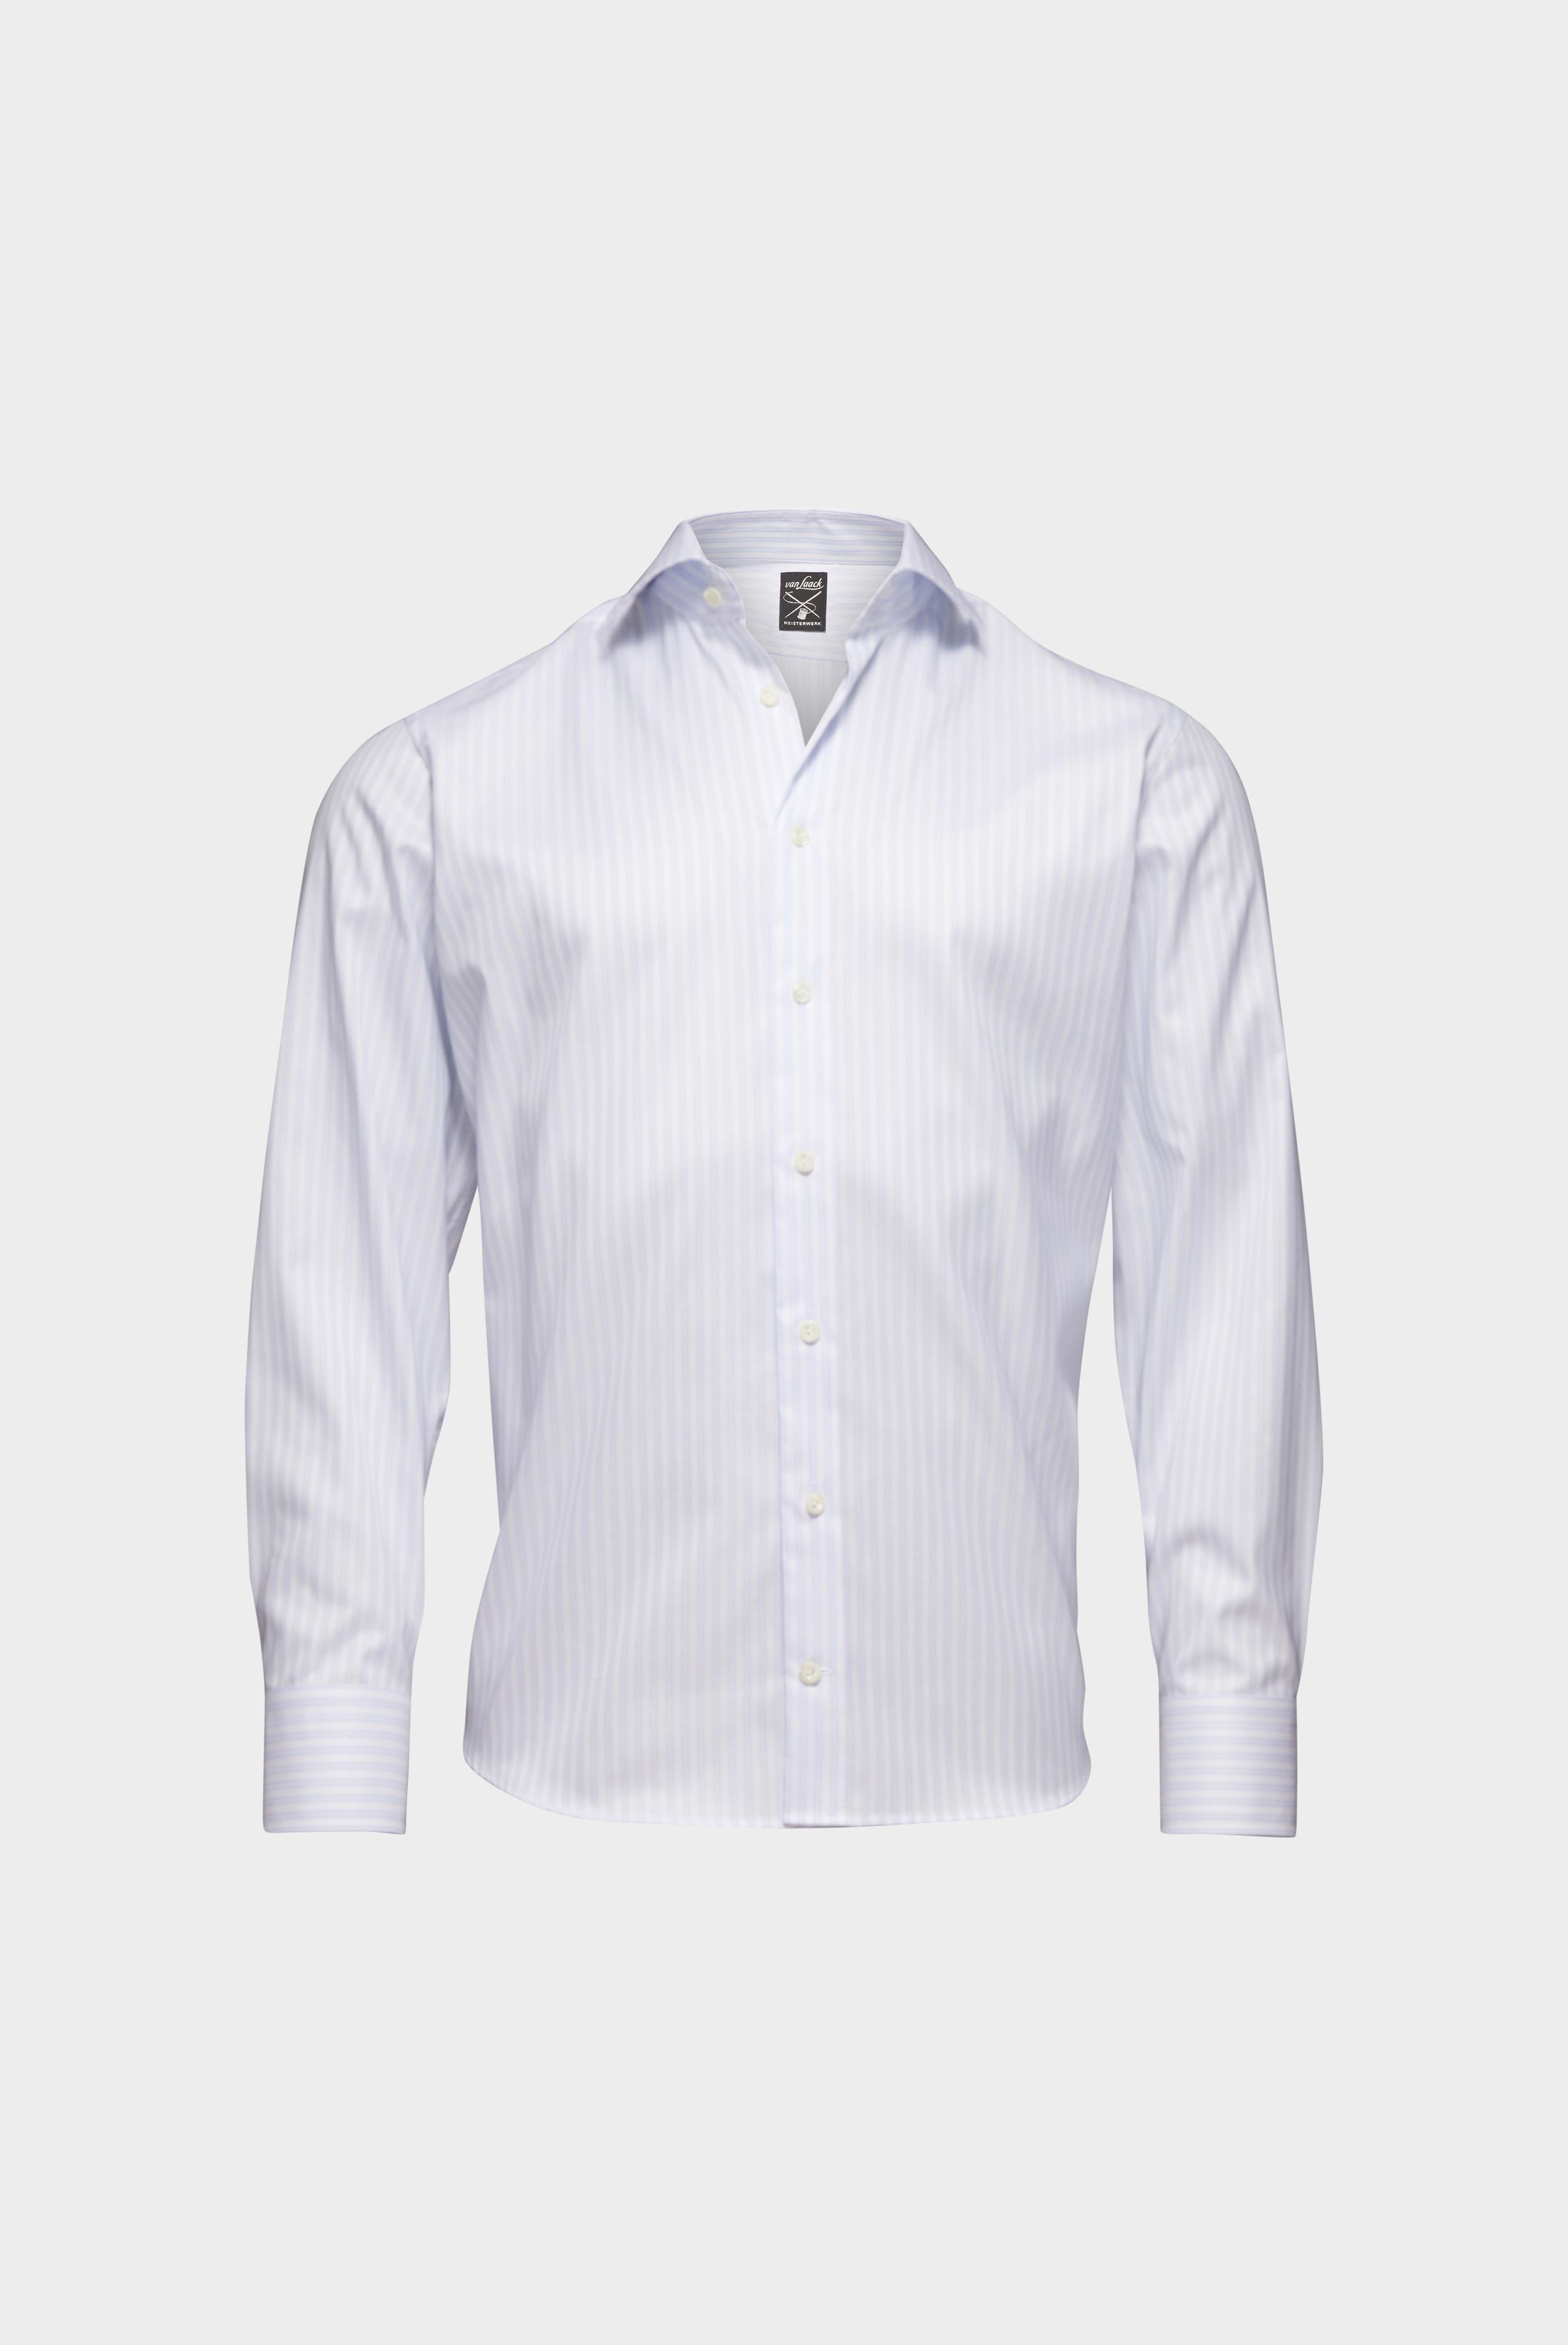 Bügelleichte Hemden+Bügelfreies Hemd mit Streifen Tailor Fit+20.2020.BQ.161106.007.38